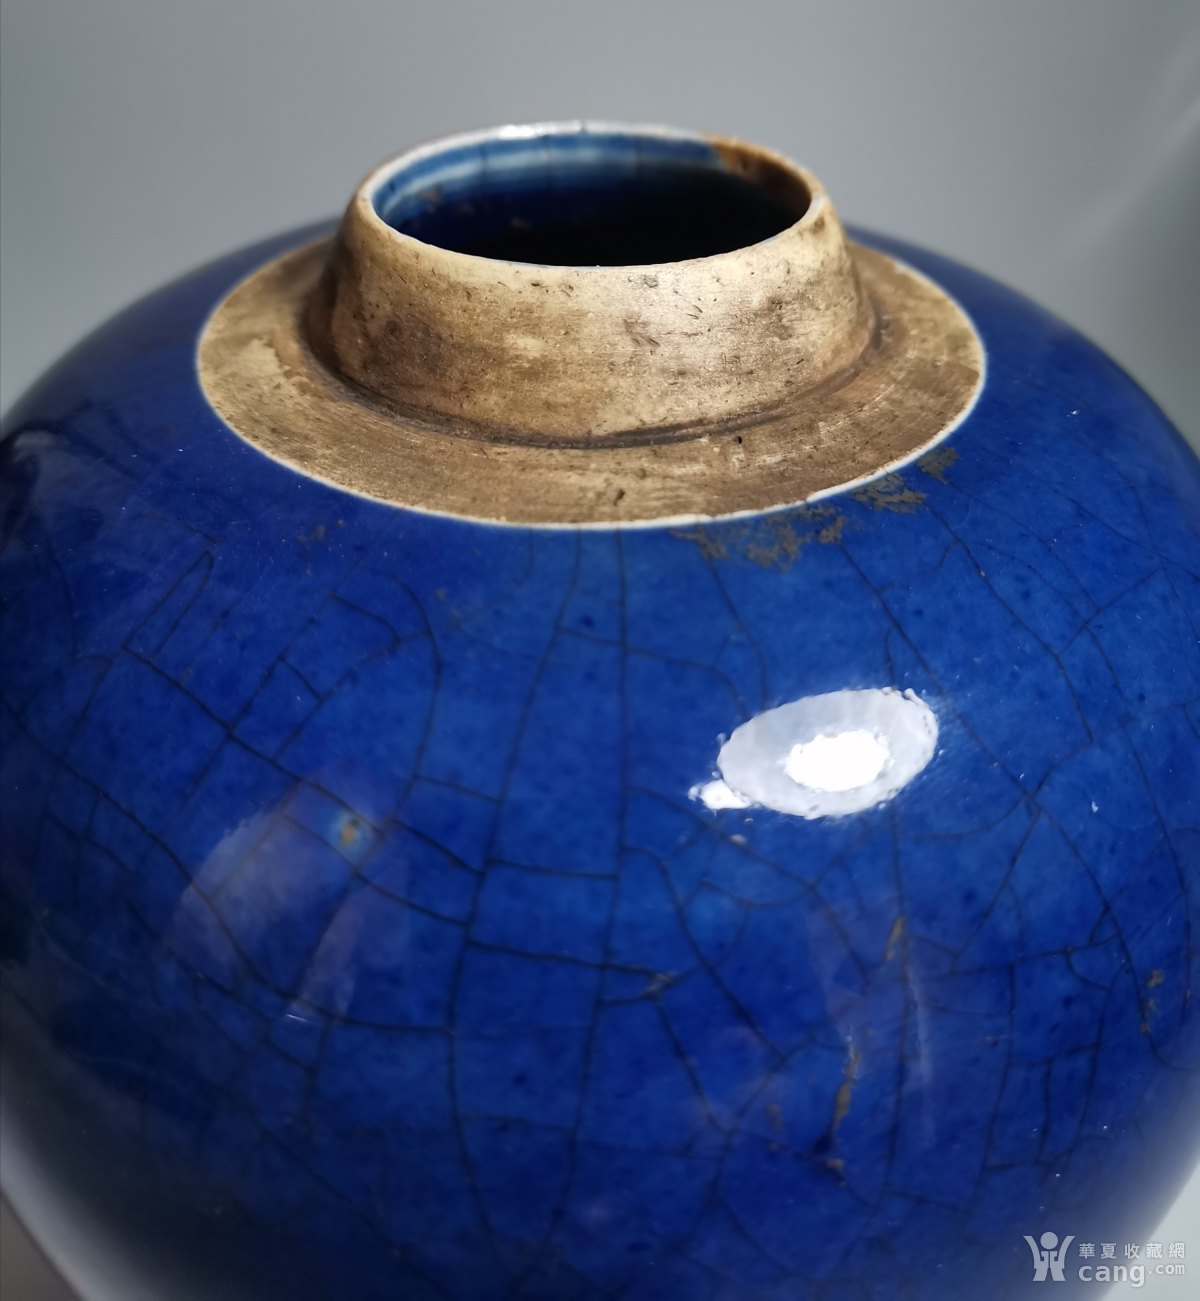 瓷器 清 清中期宝石蓝釉罐 年代 :清 风格技法 :青花/釉里红 适用对象